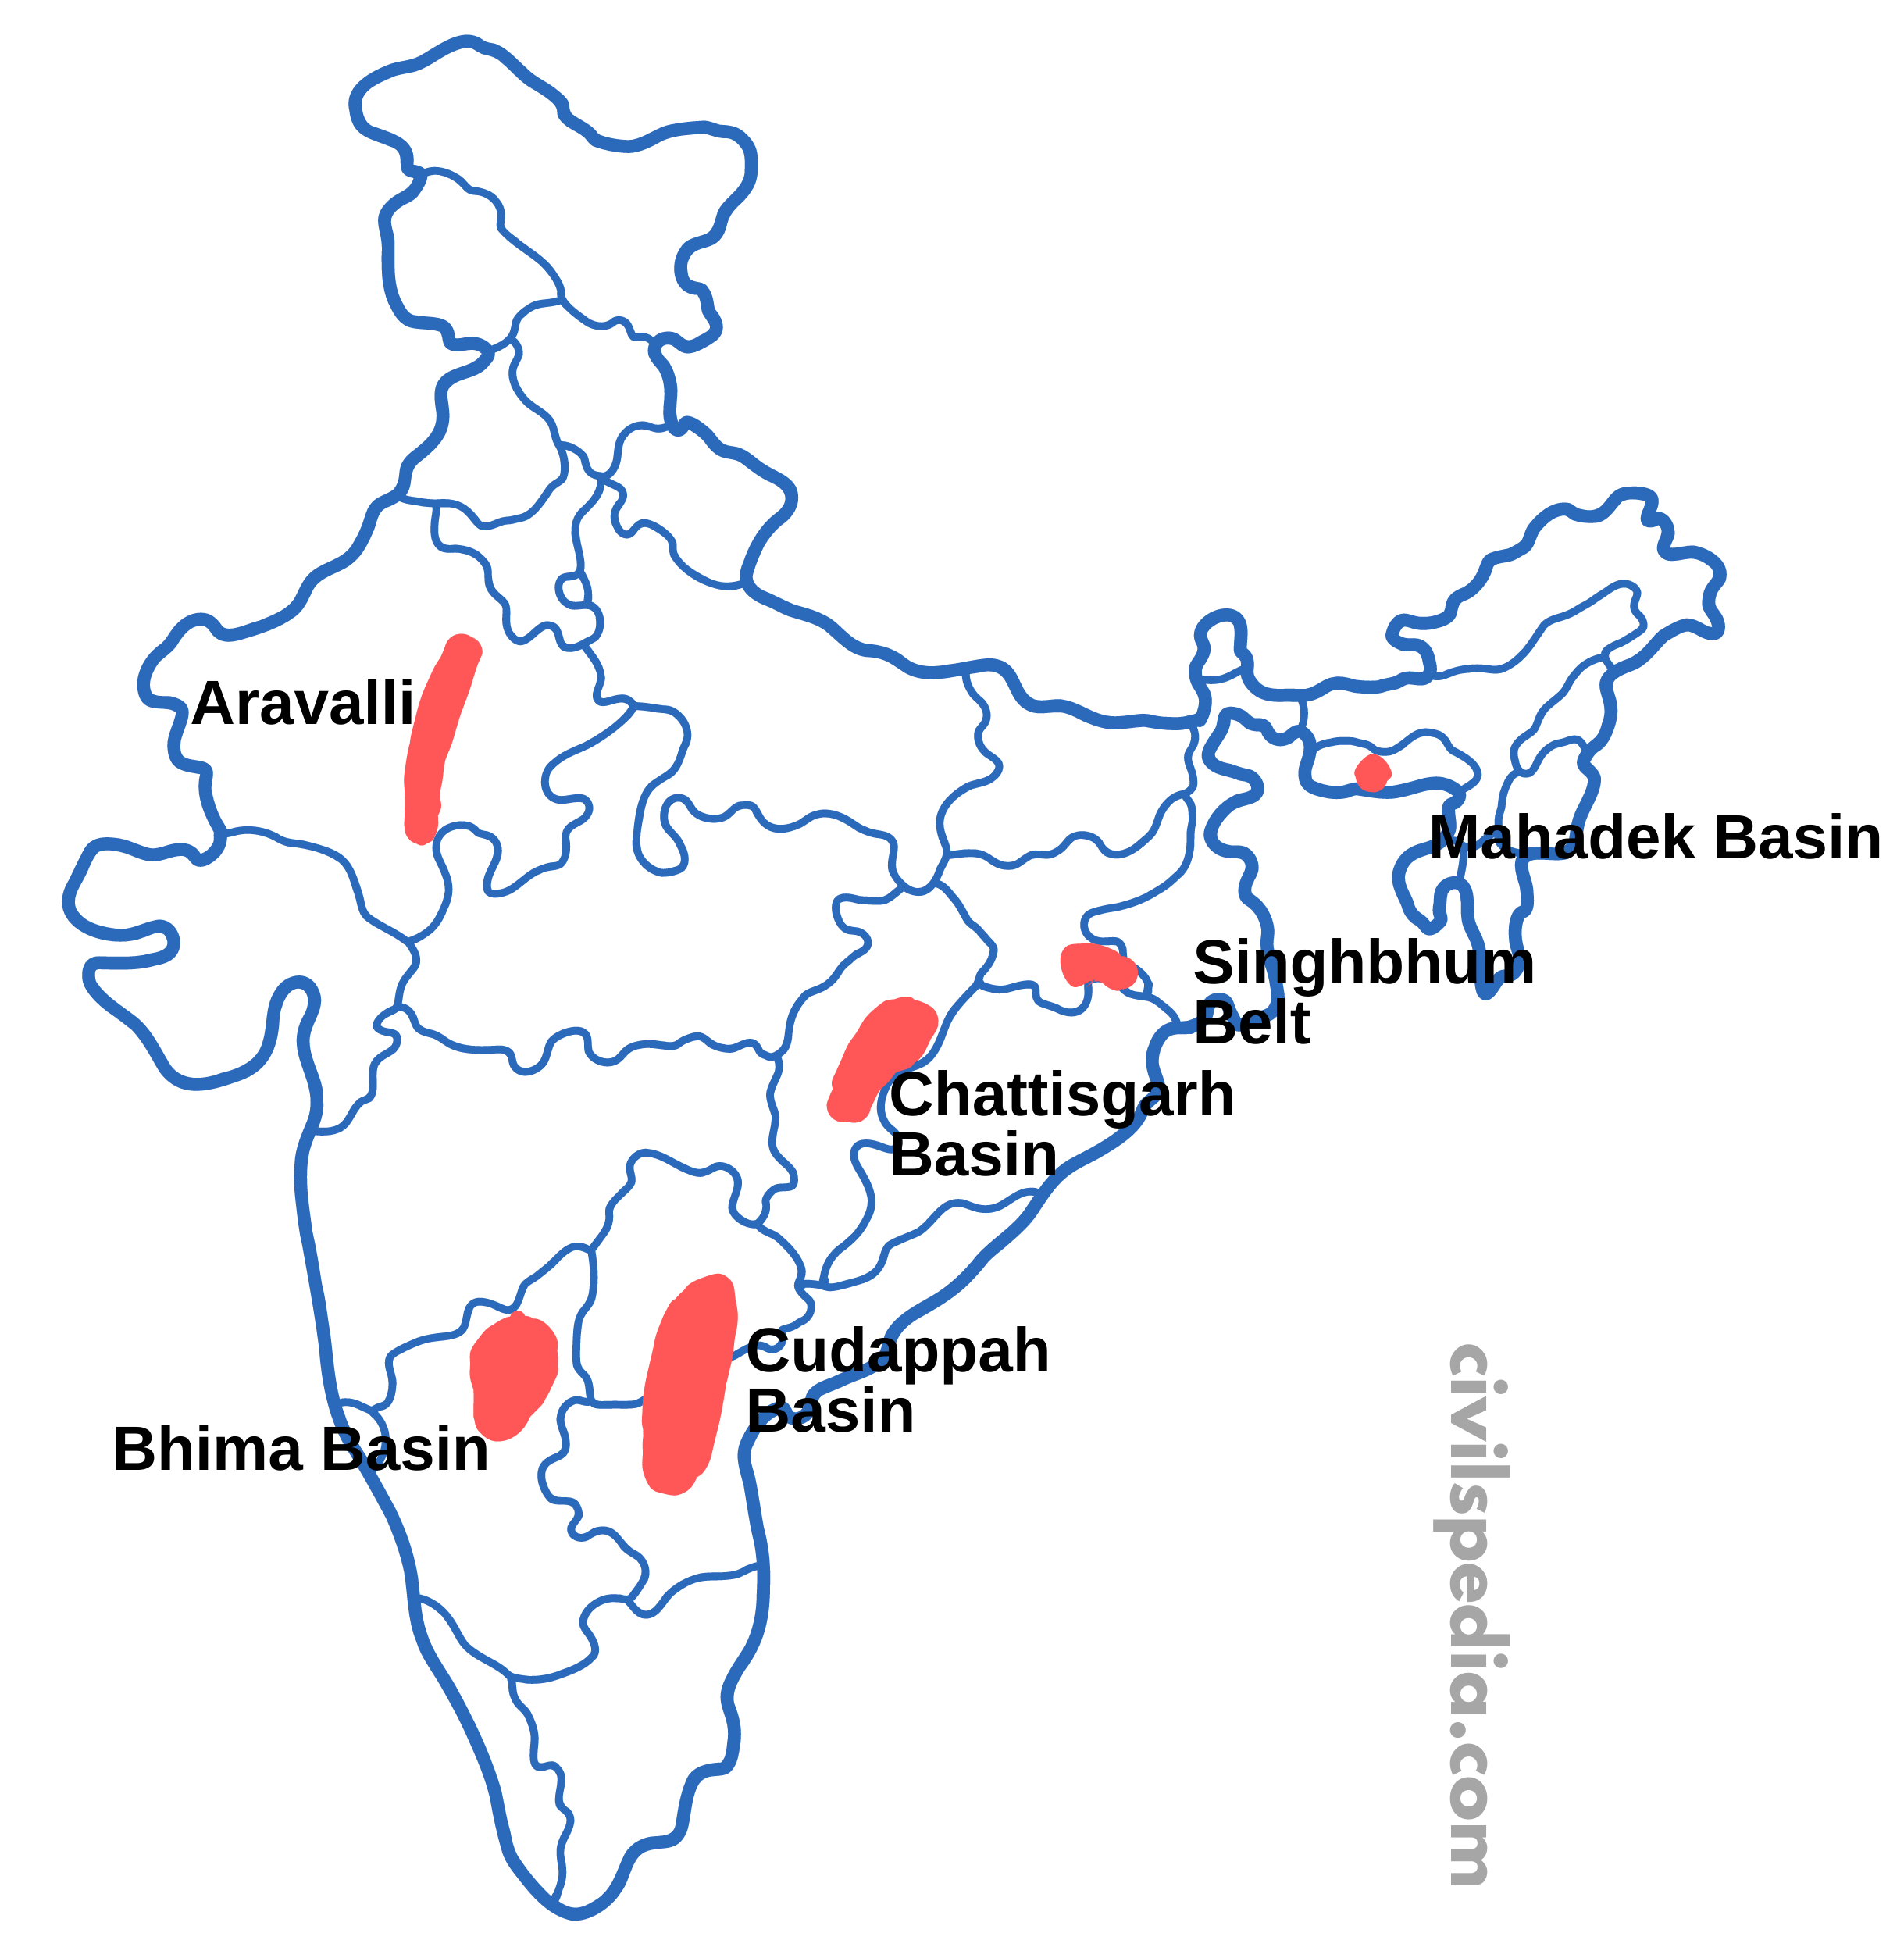 Distribution of Uranium in India